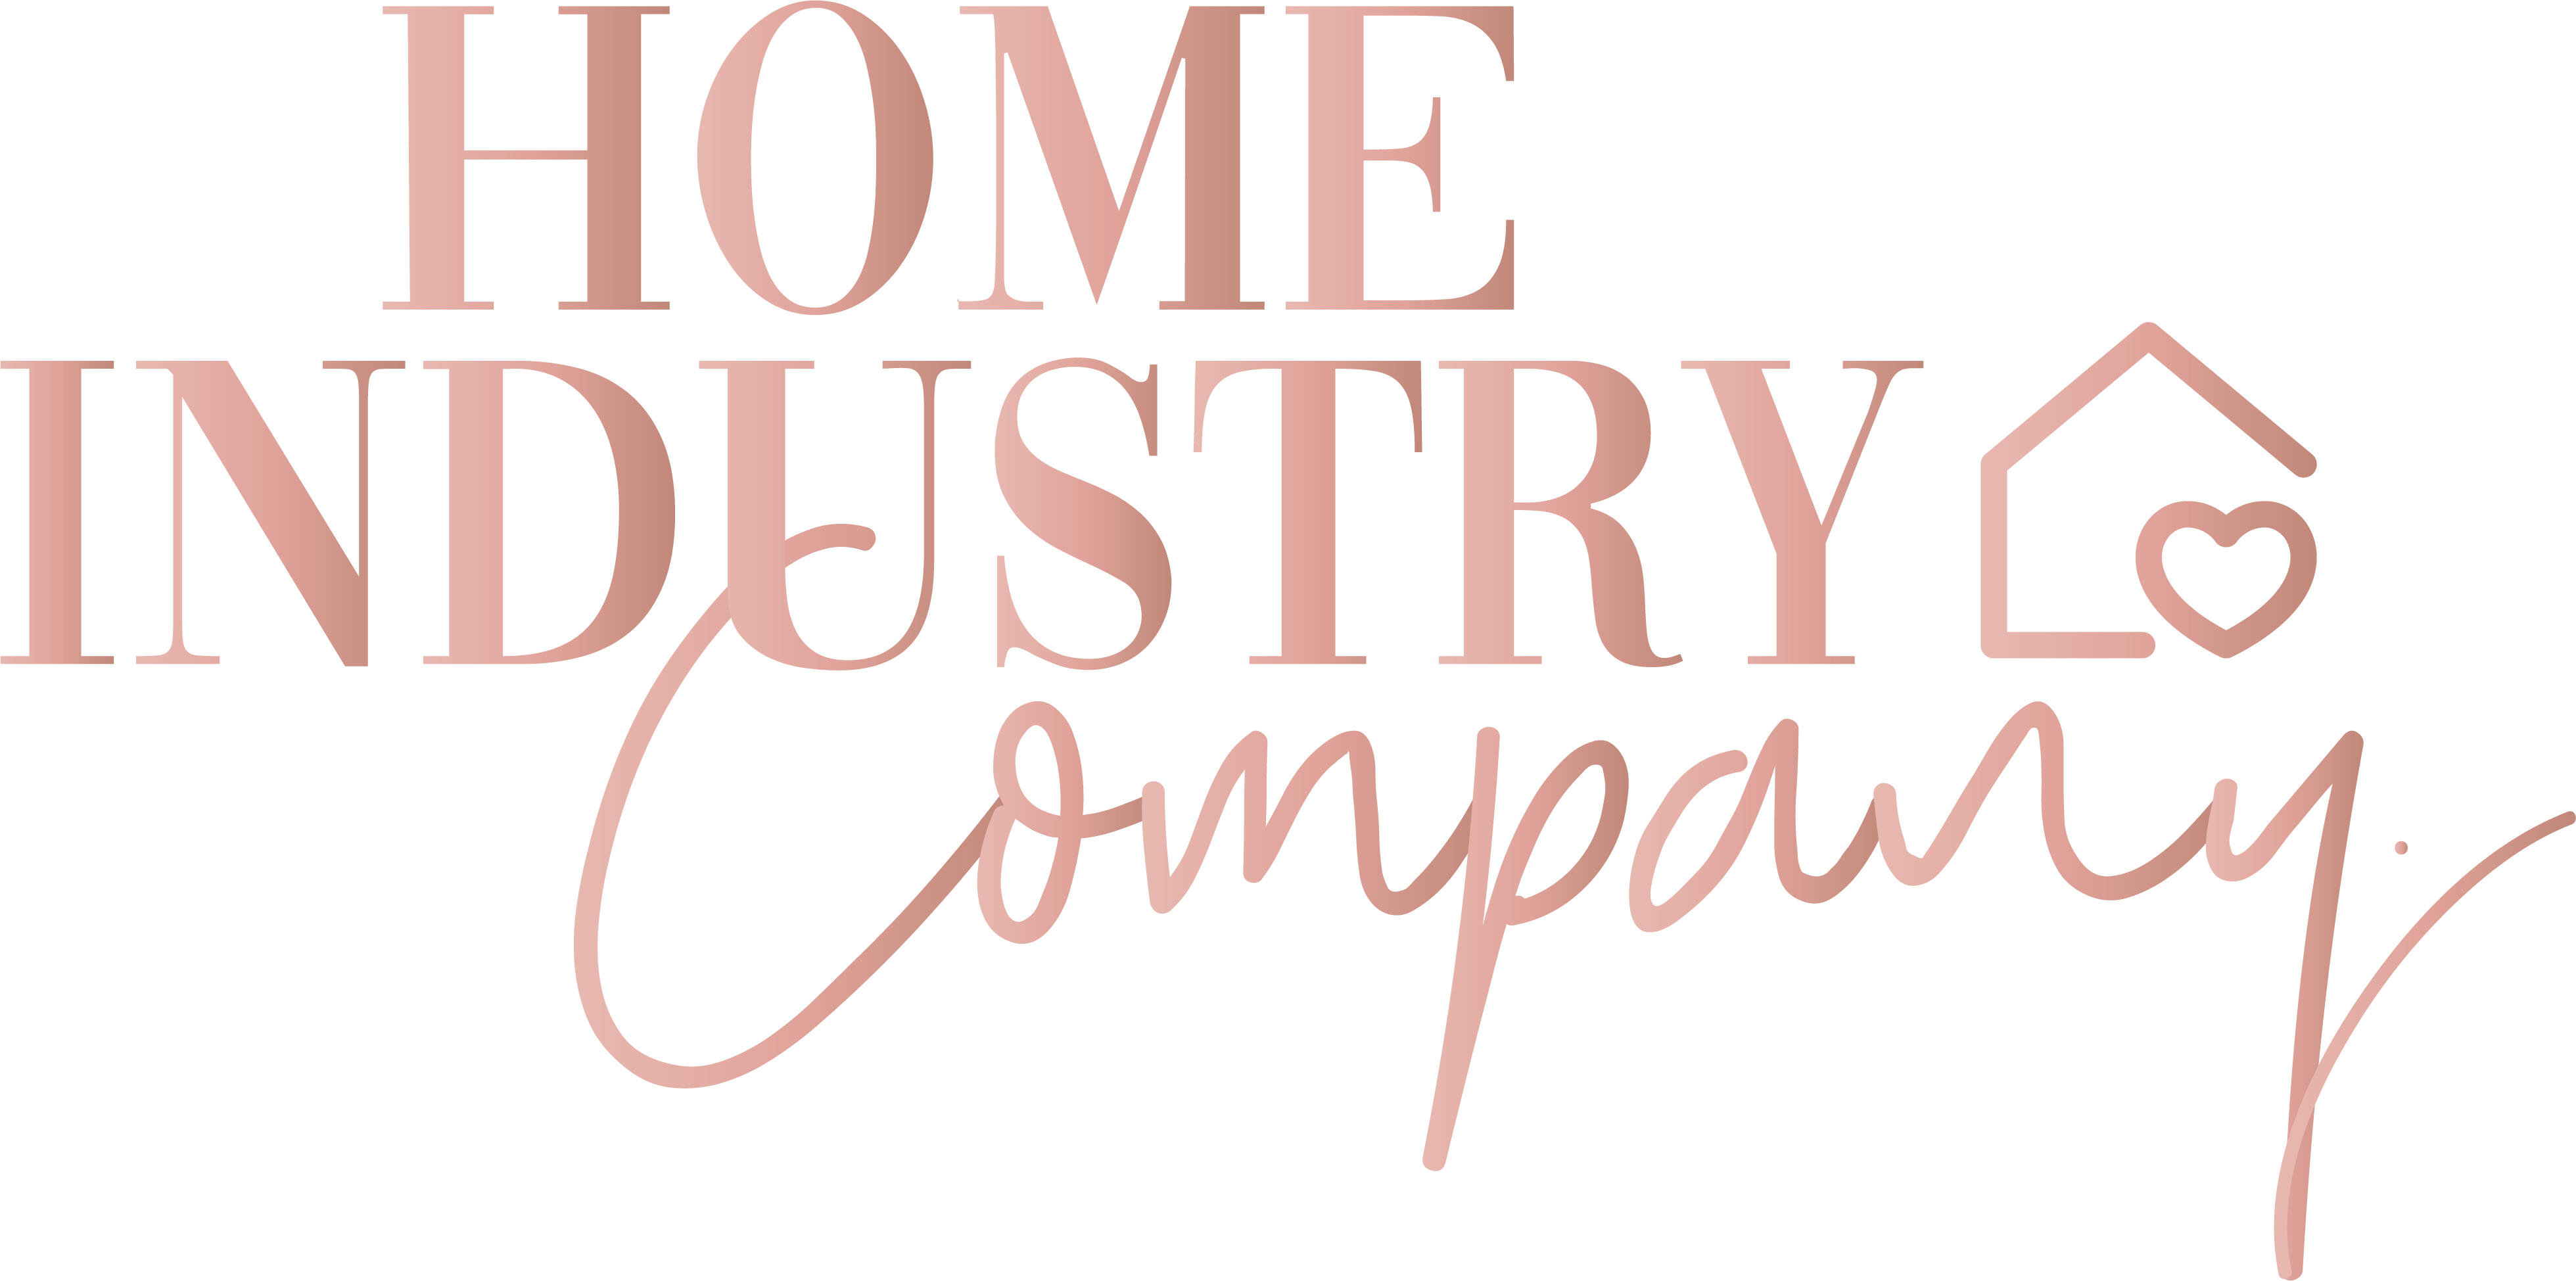 Home Industry Company Logo